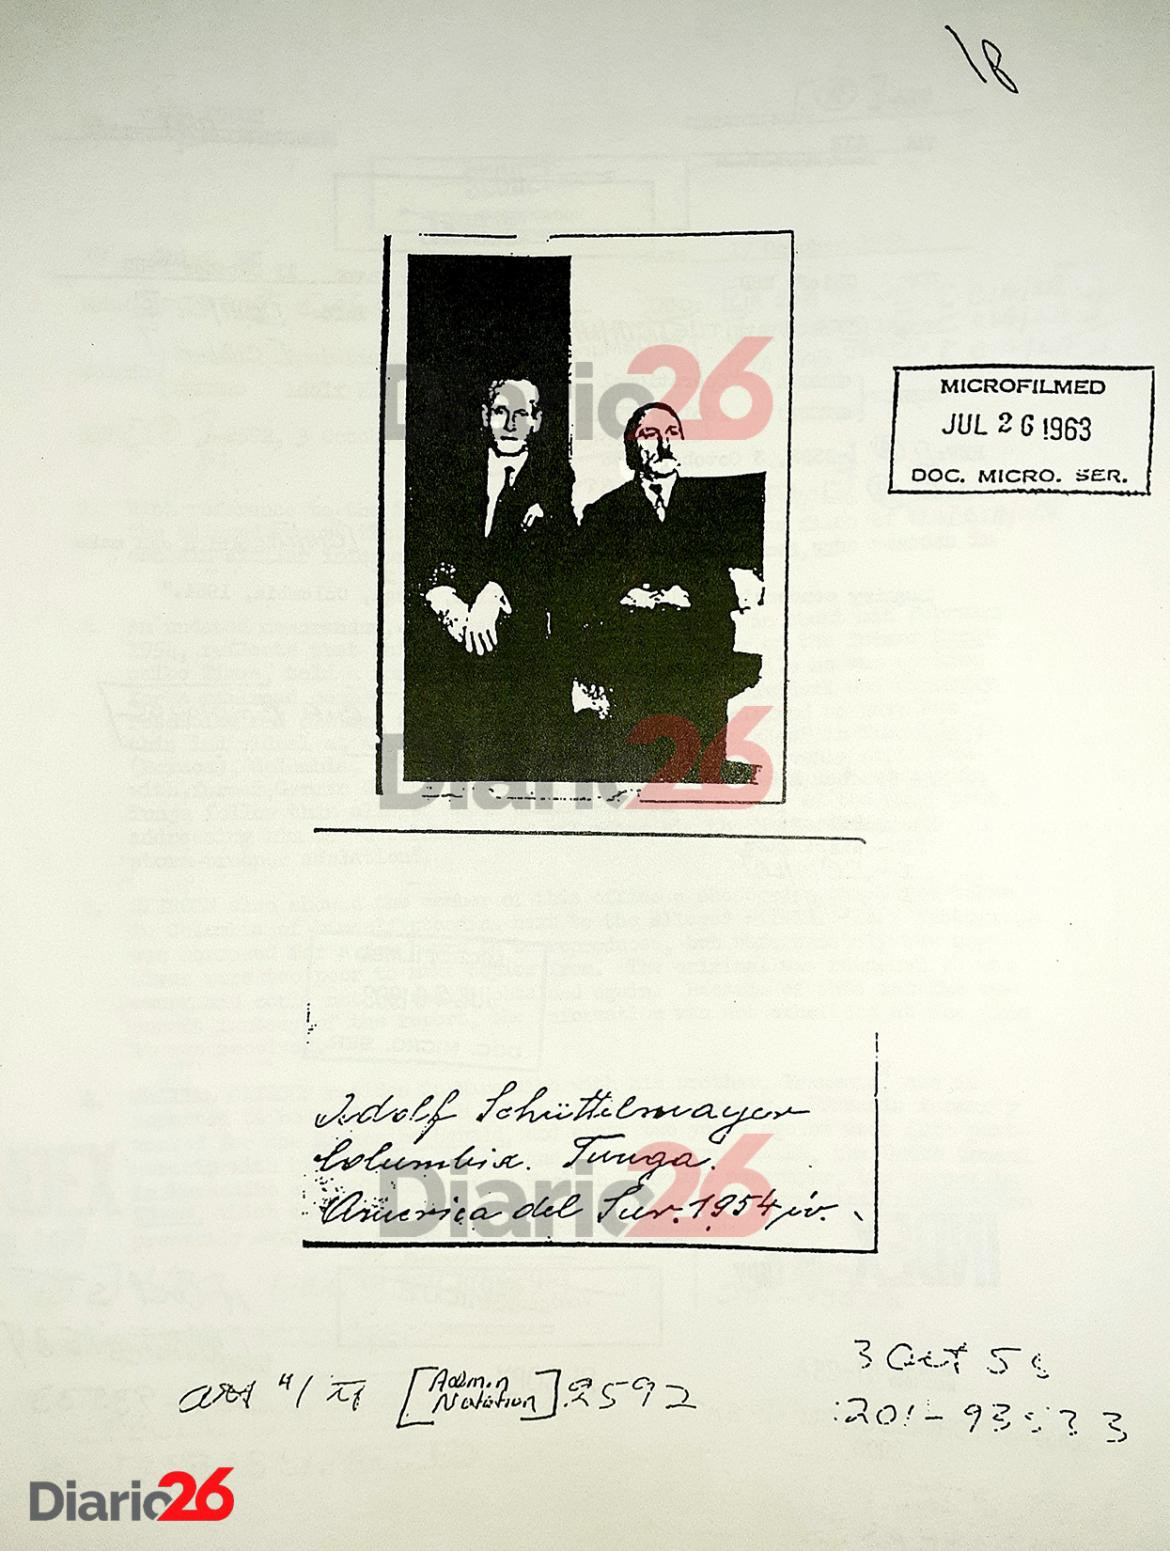 Adolf Hitler en Colombia en 1954, documento desclasificado del FBI, nazis